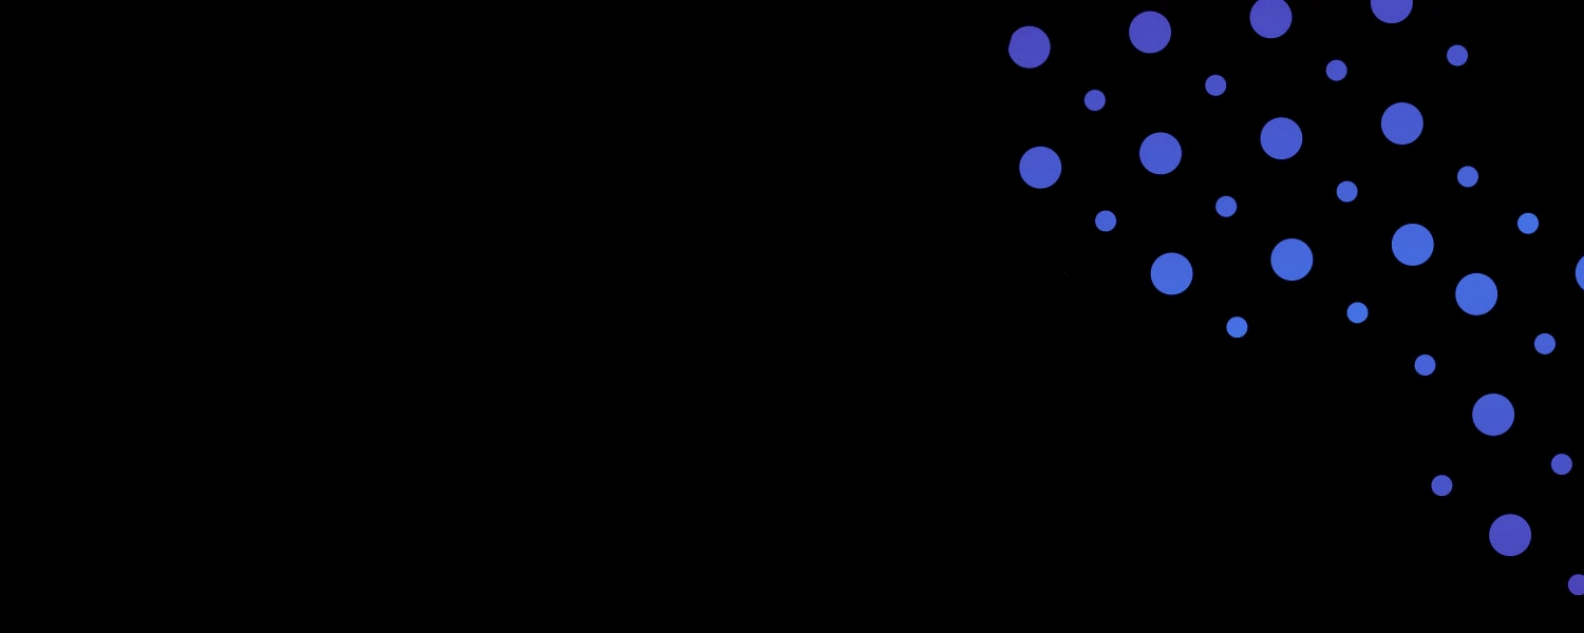 Fondo negro con círculos azules y morados 